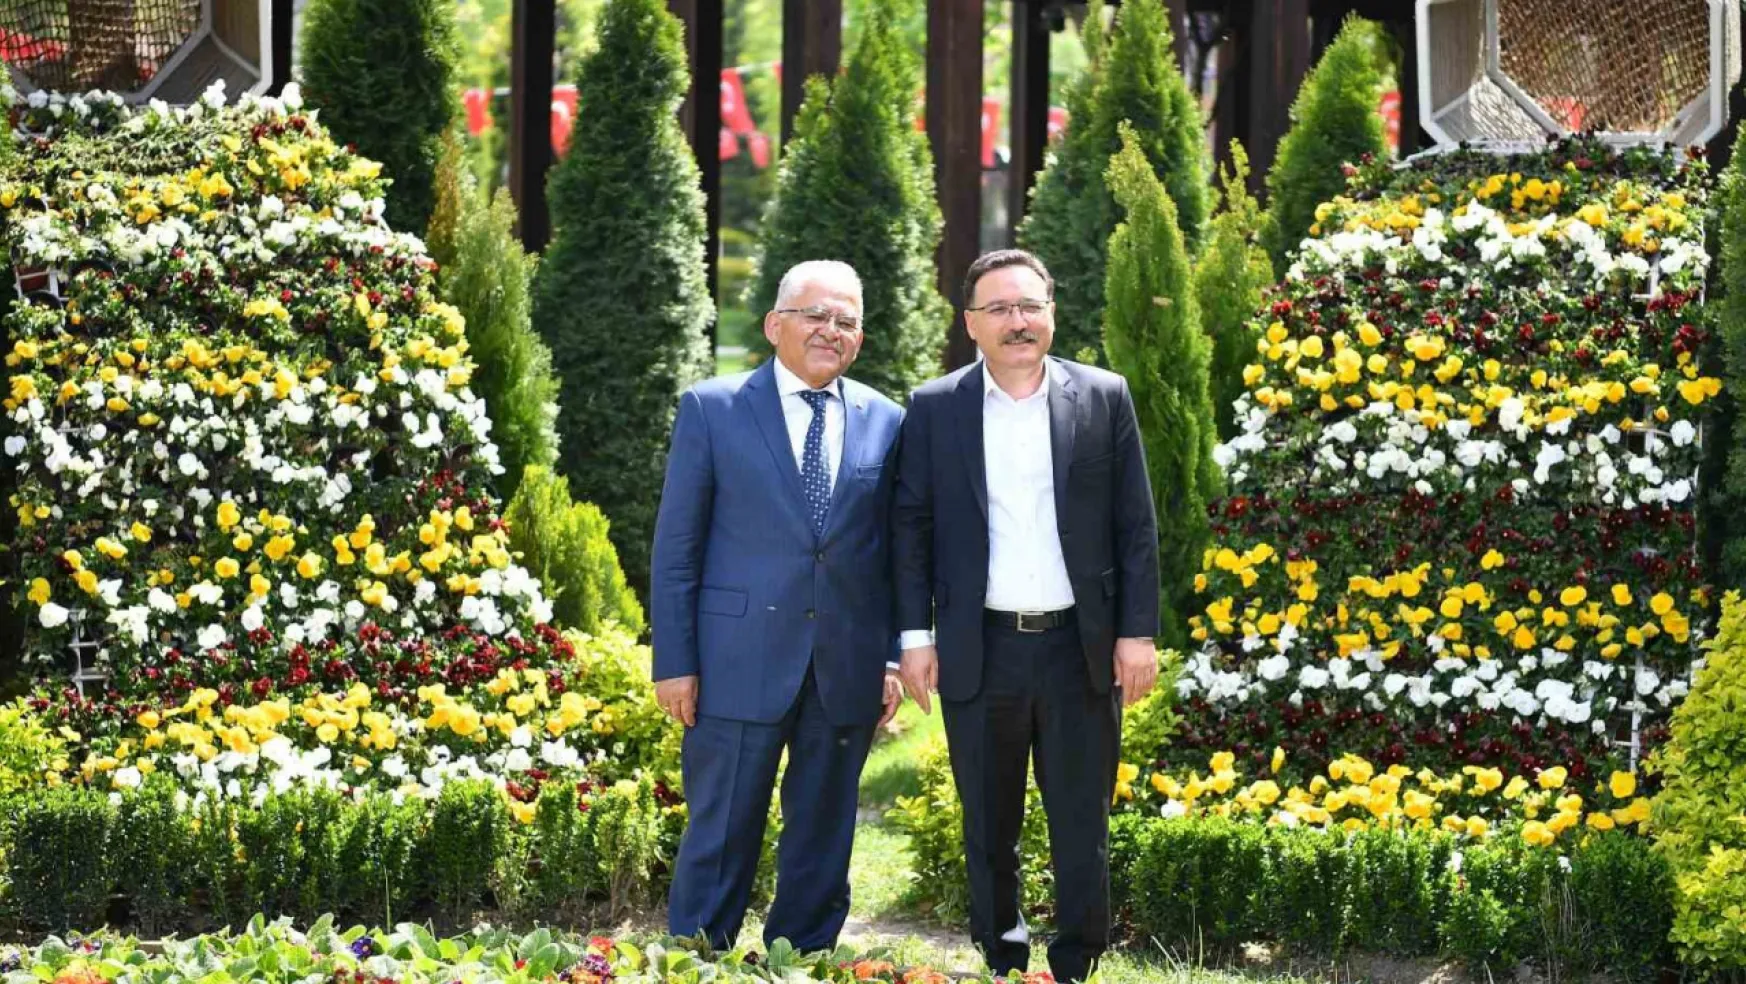 Vali Çiçek'ten Başkan Büyükkılıç'a 'hayırlı olsun' ziyareti